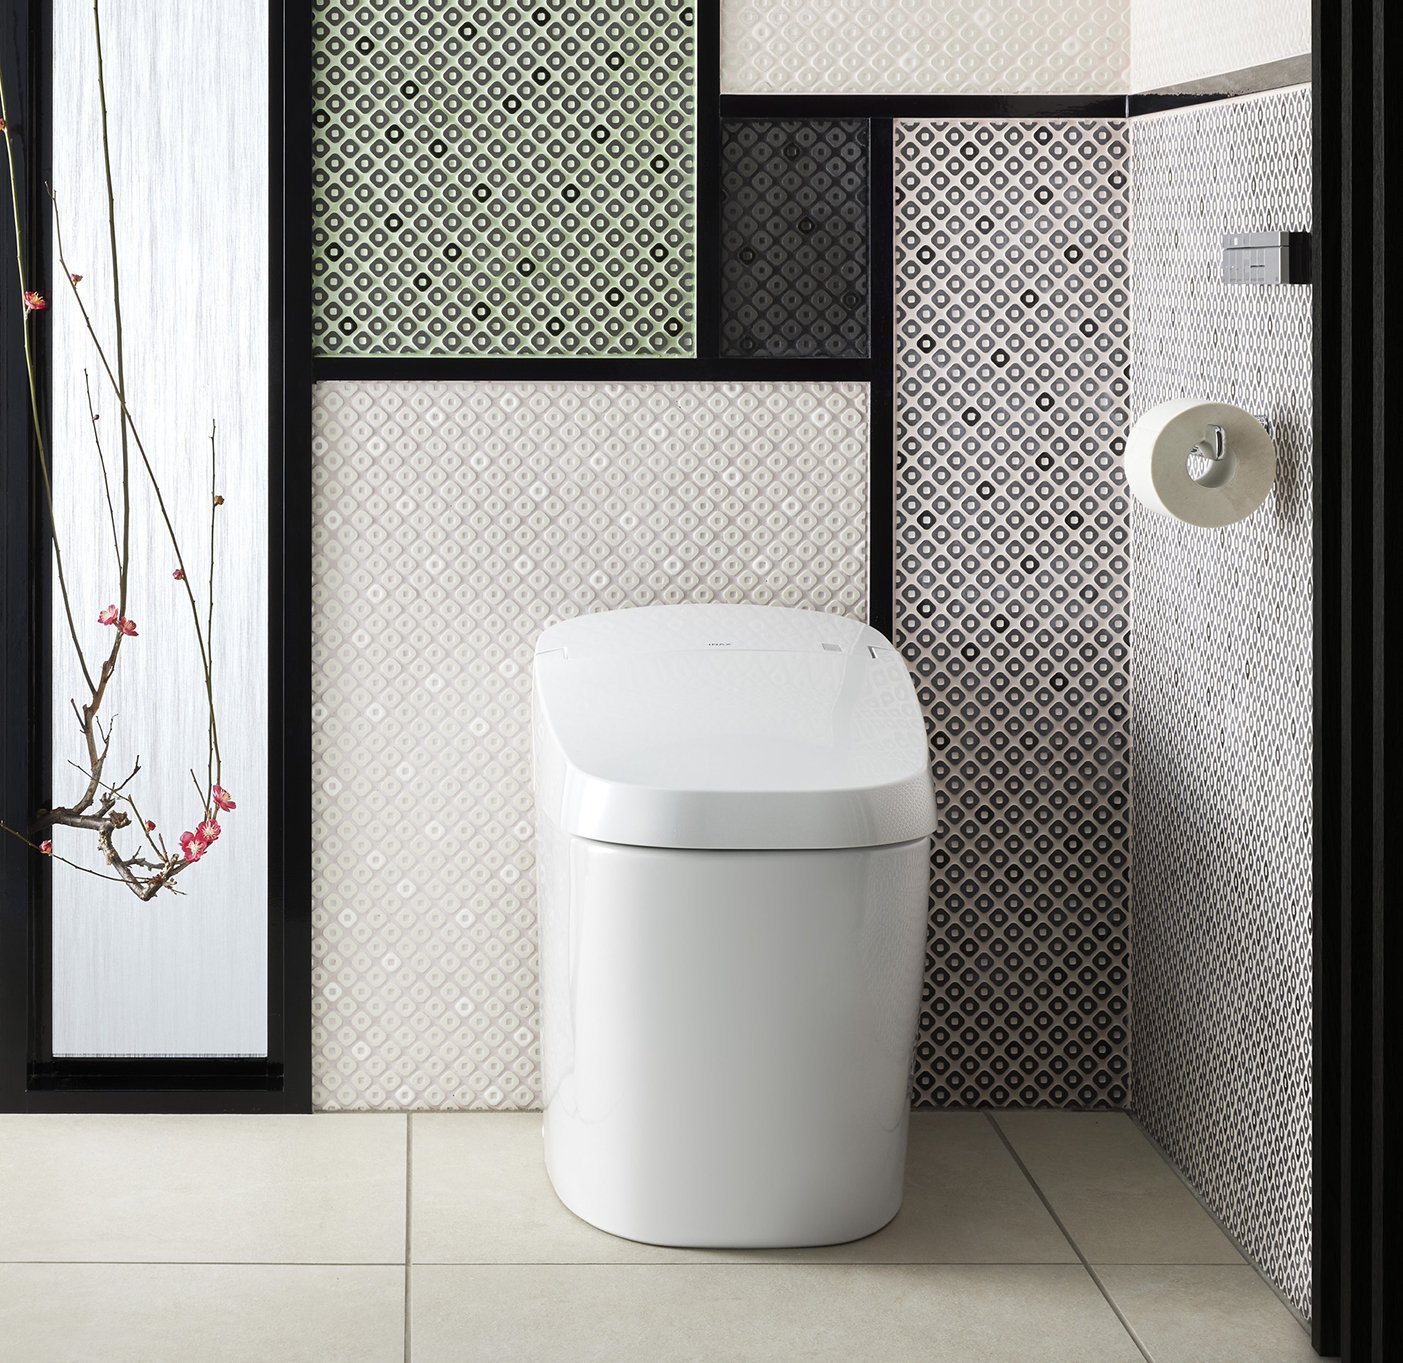 Nội thất phòng tắm INAX - INAX chưa bao giờ ngừng cải tiến các sản phẩm thiết bị vệ sinh để mang đến trải nghiệm tuyệt vời hơn cho khách hàng. Với nội thất phòng tắm INAX, bạn sẽ tận hưởng một không gian tuyệt vời, đầy tiện nghi và đẳng cấp. Hãy tưởng tượng về một phòng tắm hoàn hảo, và INAX sẽ mang tới cho bạn.